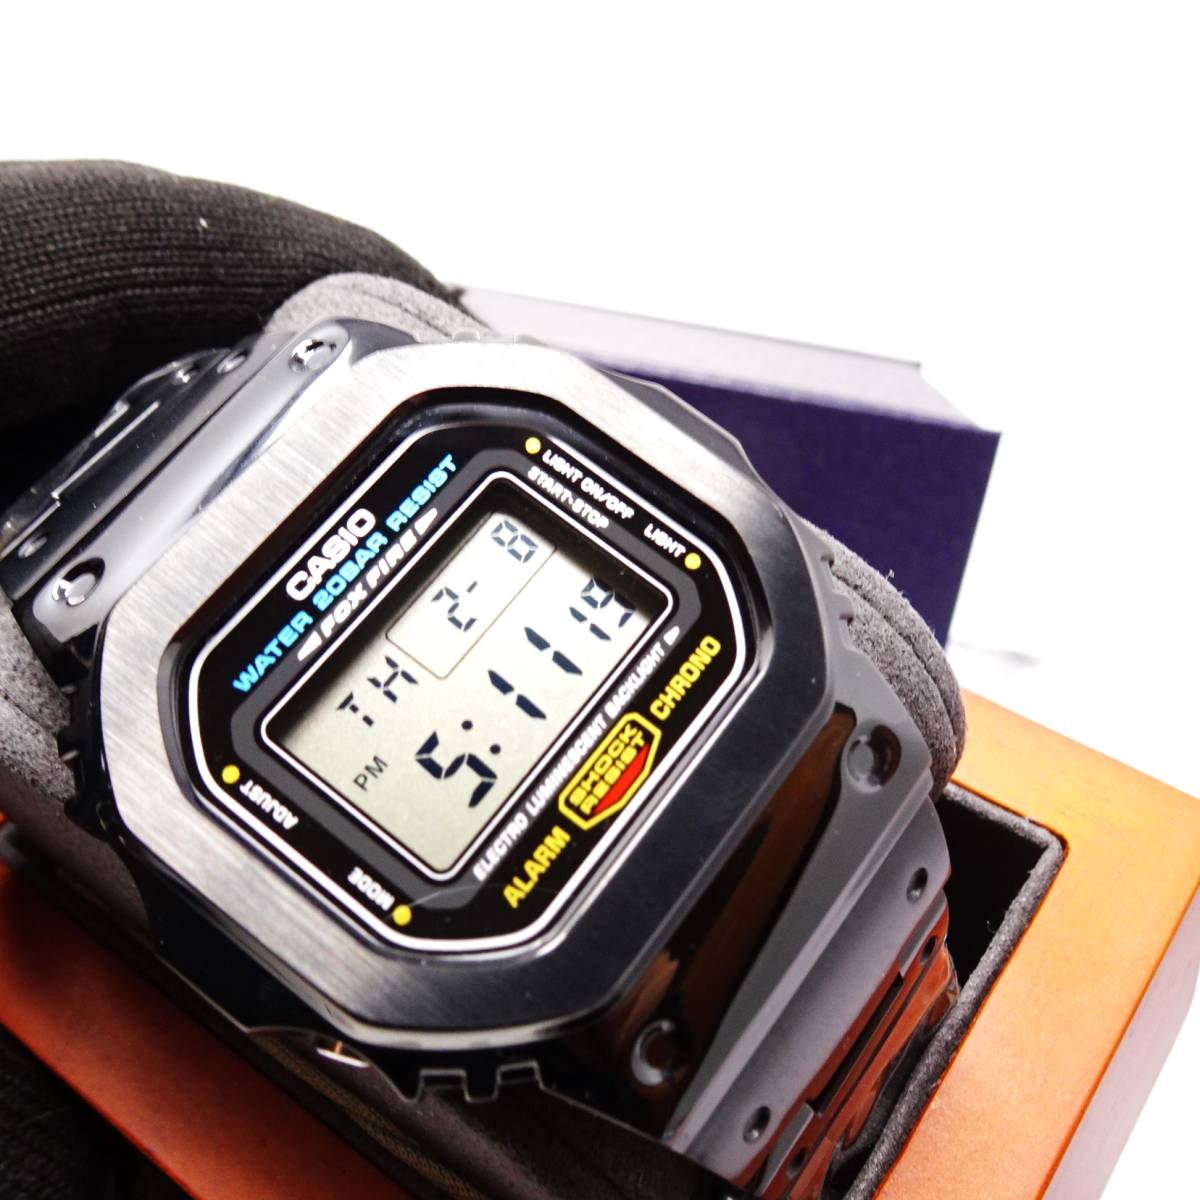 送料無料・新品・Gショックカスタム本体付きDW5600デジタル腕時計フルステンレス製ブラックベゼル＆ベルト・フルメタルモデル